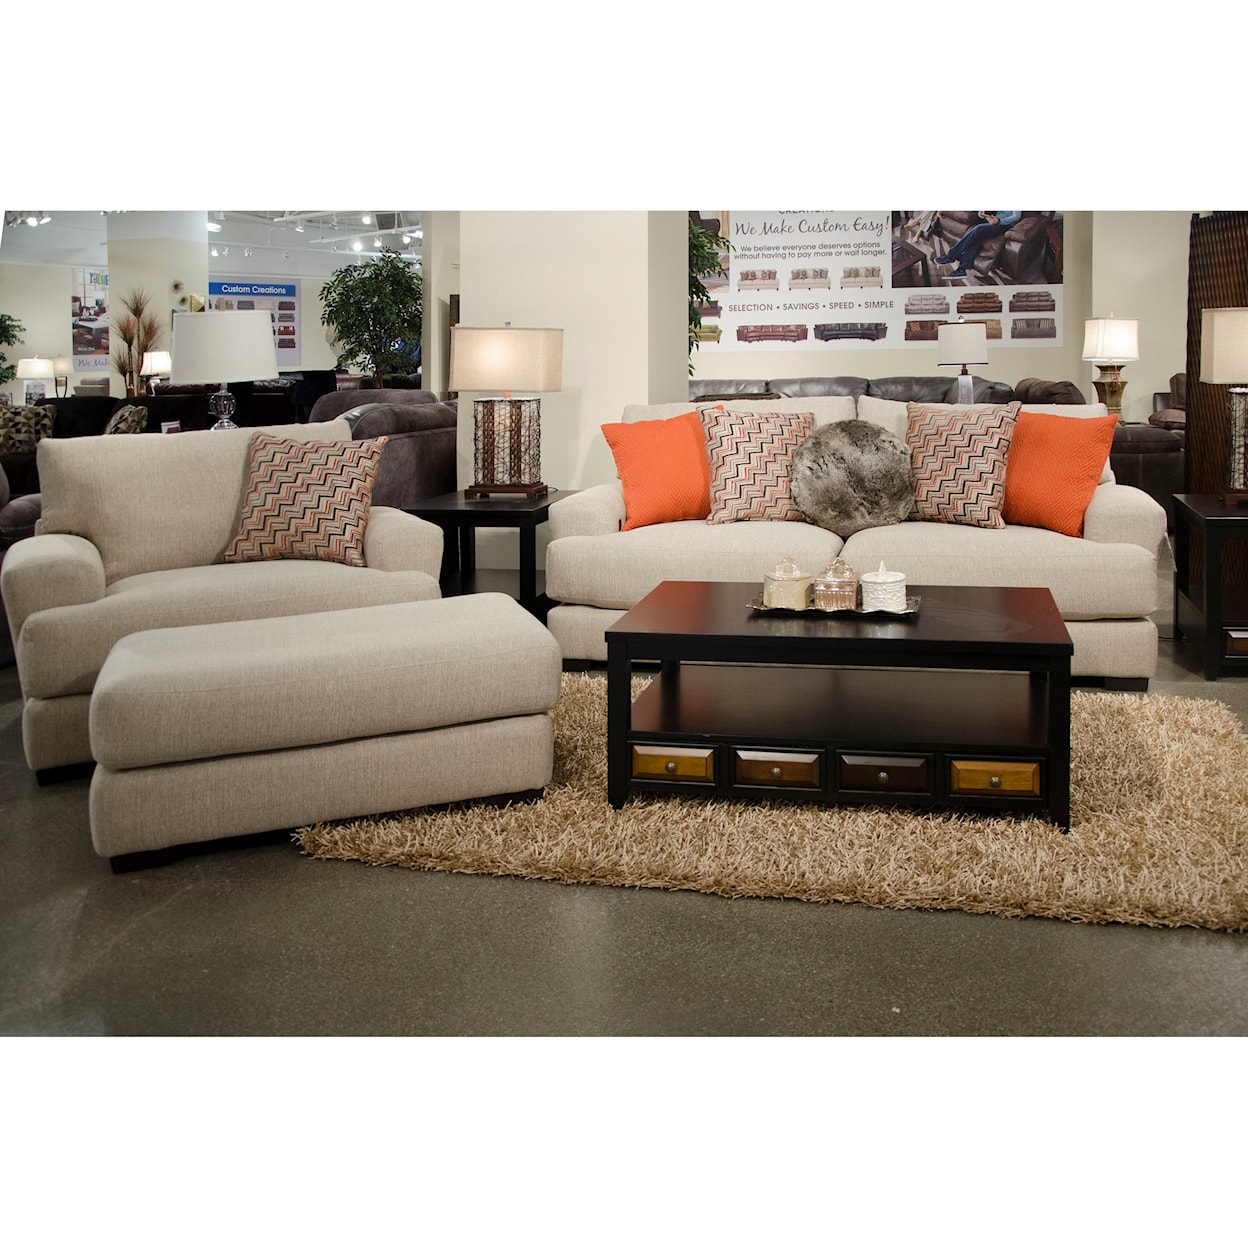 Jackson Furniture 4498 Ava Ottoman